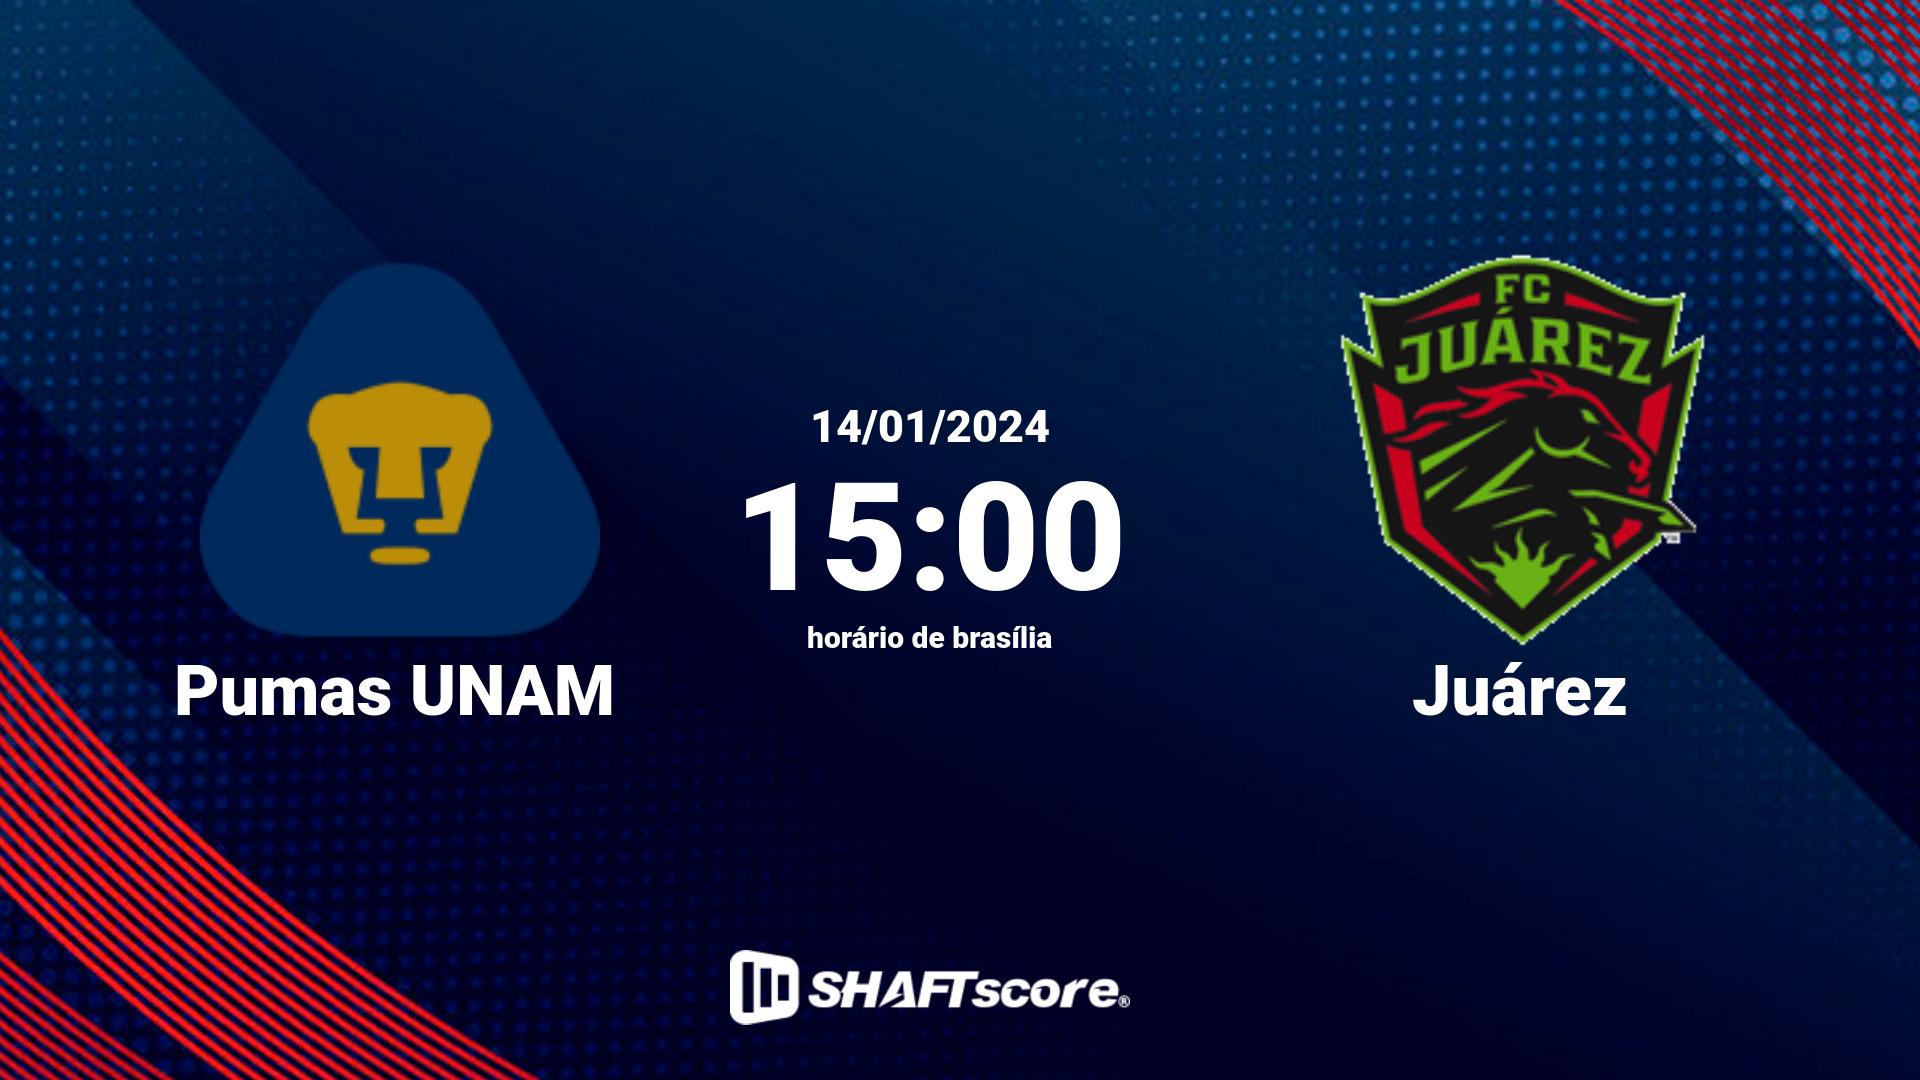 Estatísticas do jogo Pumas UNAM vs Juárez 14.01 15:00